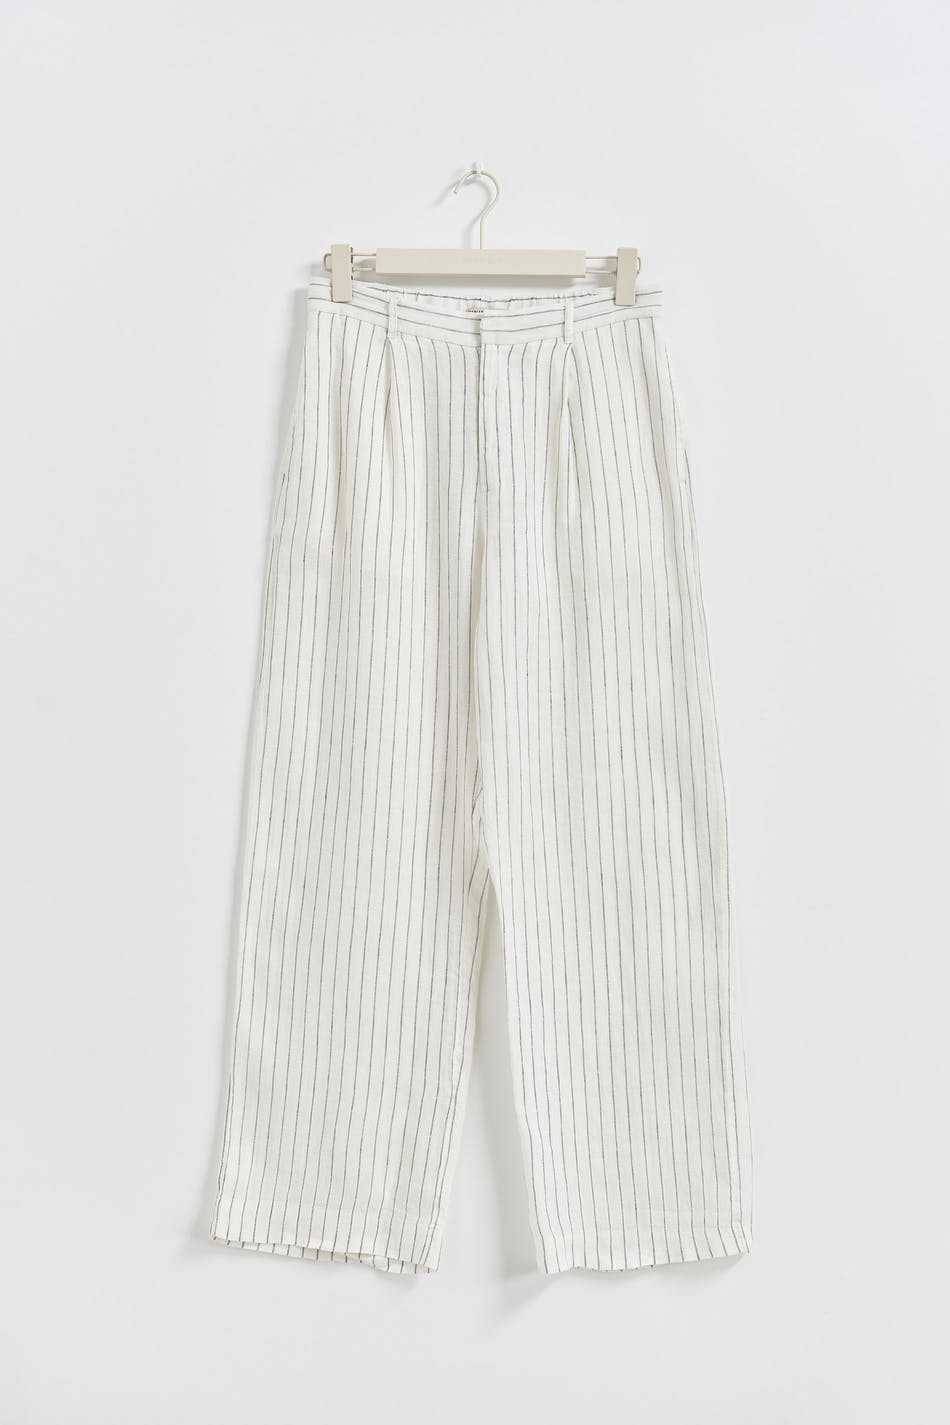 Gina Tricot - Petite linen trousers - hørbukser- White - S - Female